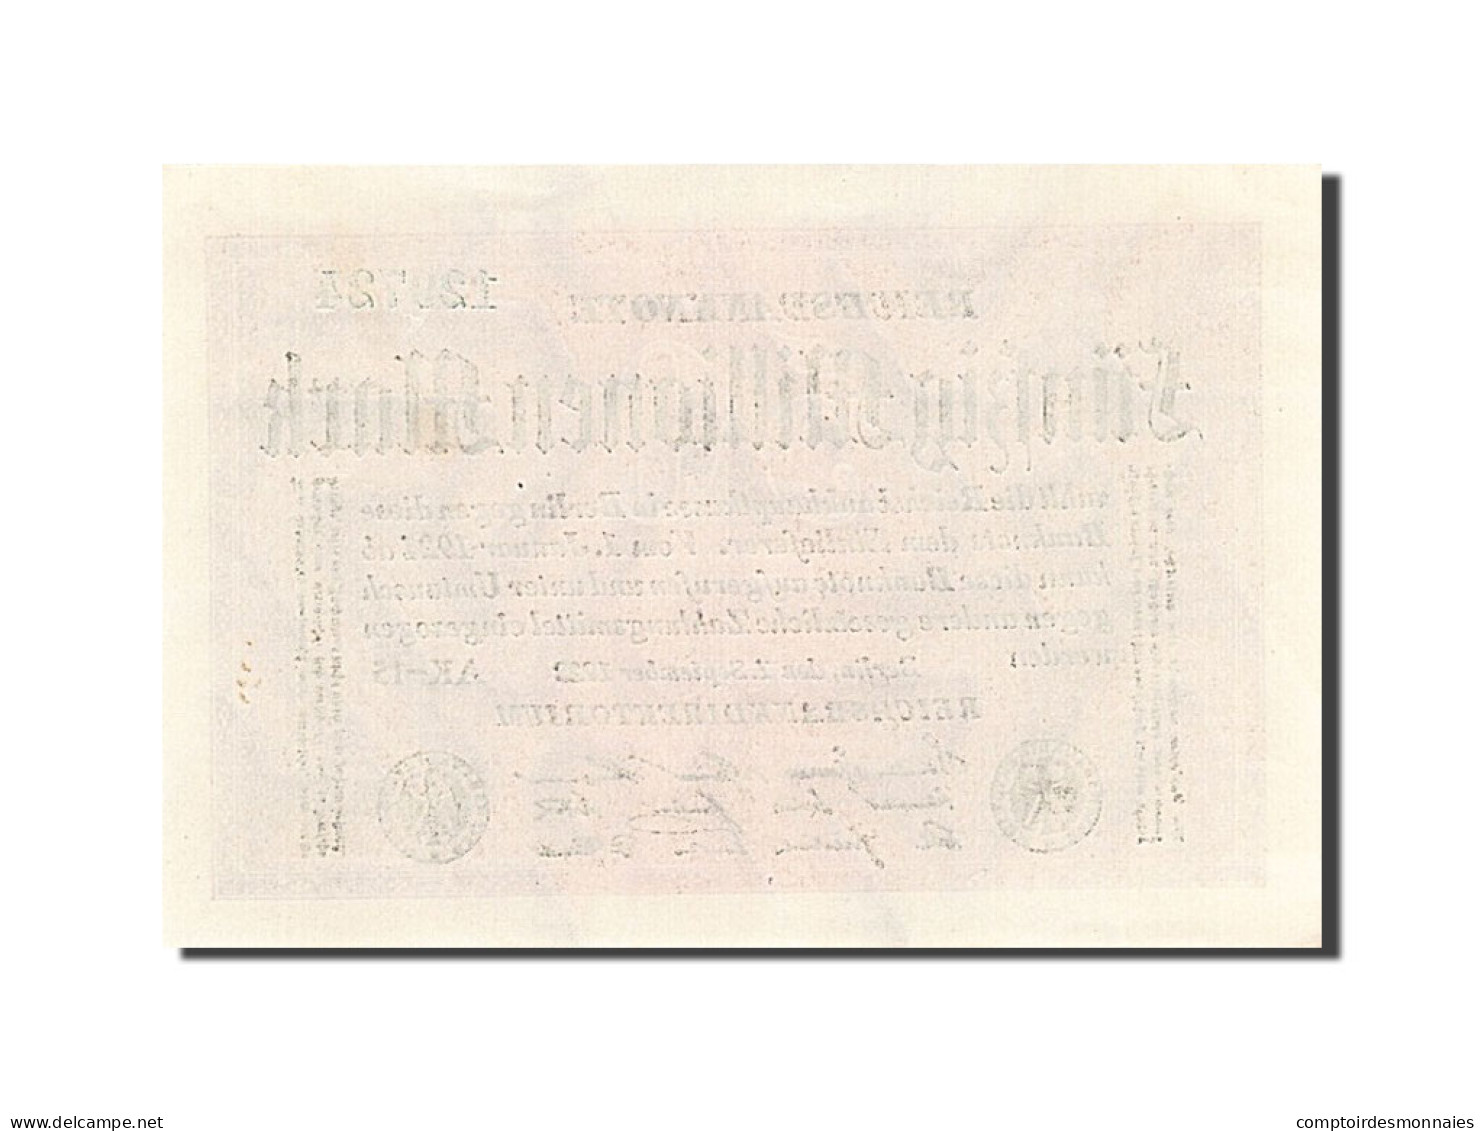 Billet, Allemagne, 50 Millionen Mark, 1923, 1923-09-01, KM:109b, SPL - 50 Mio. Mark